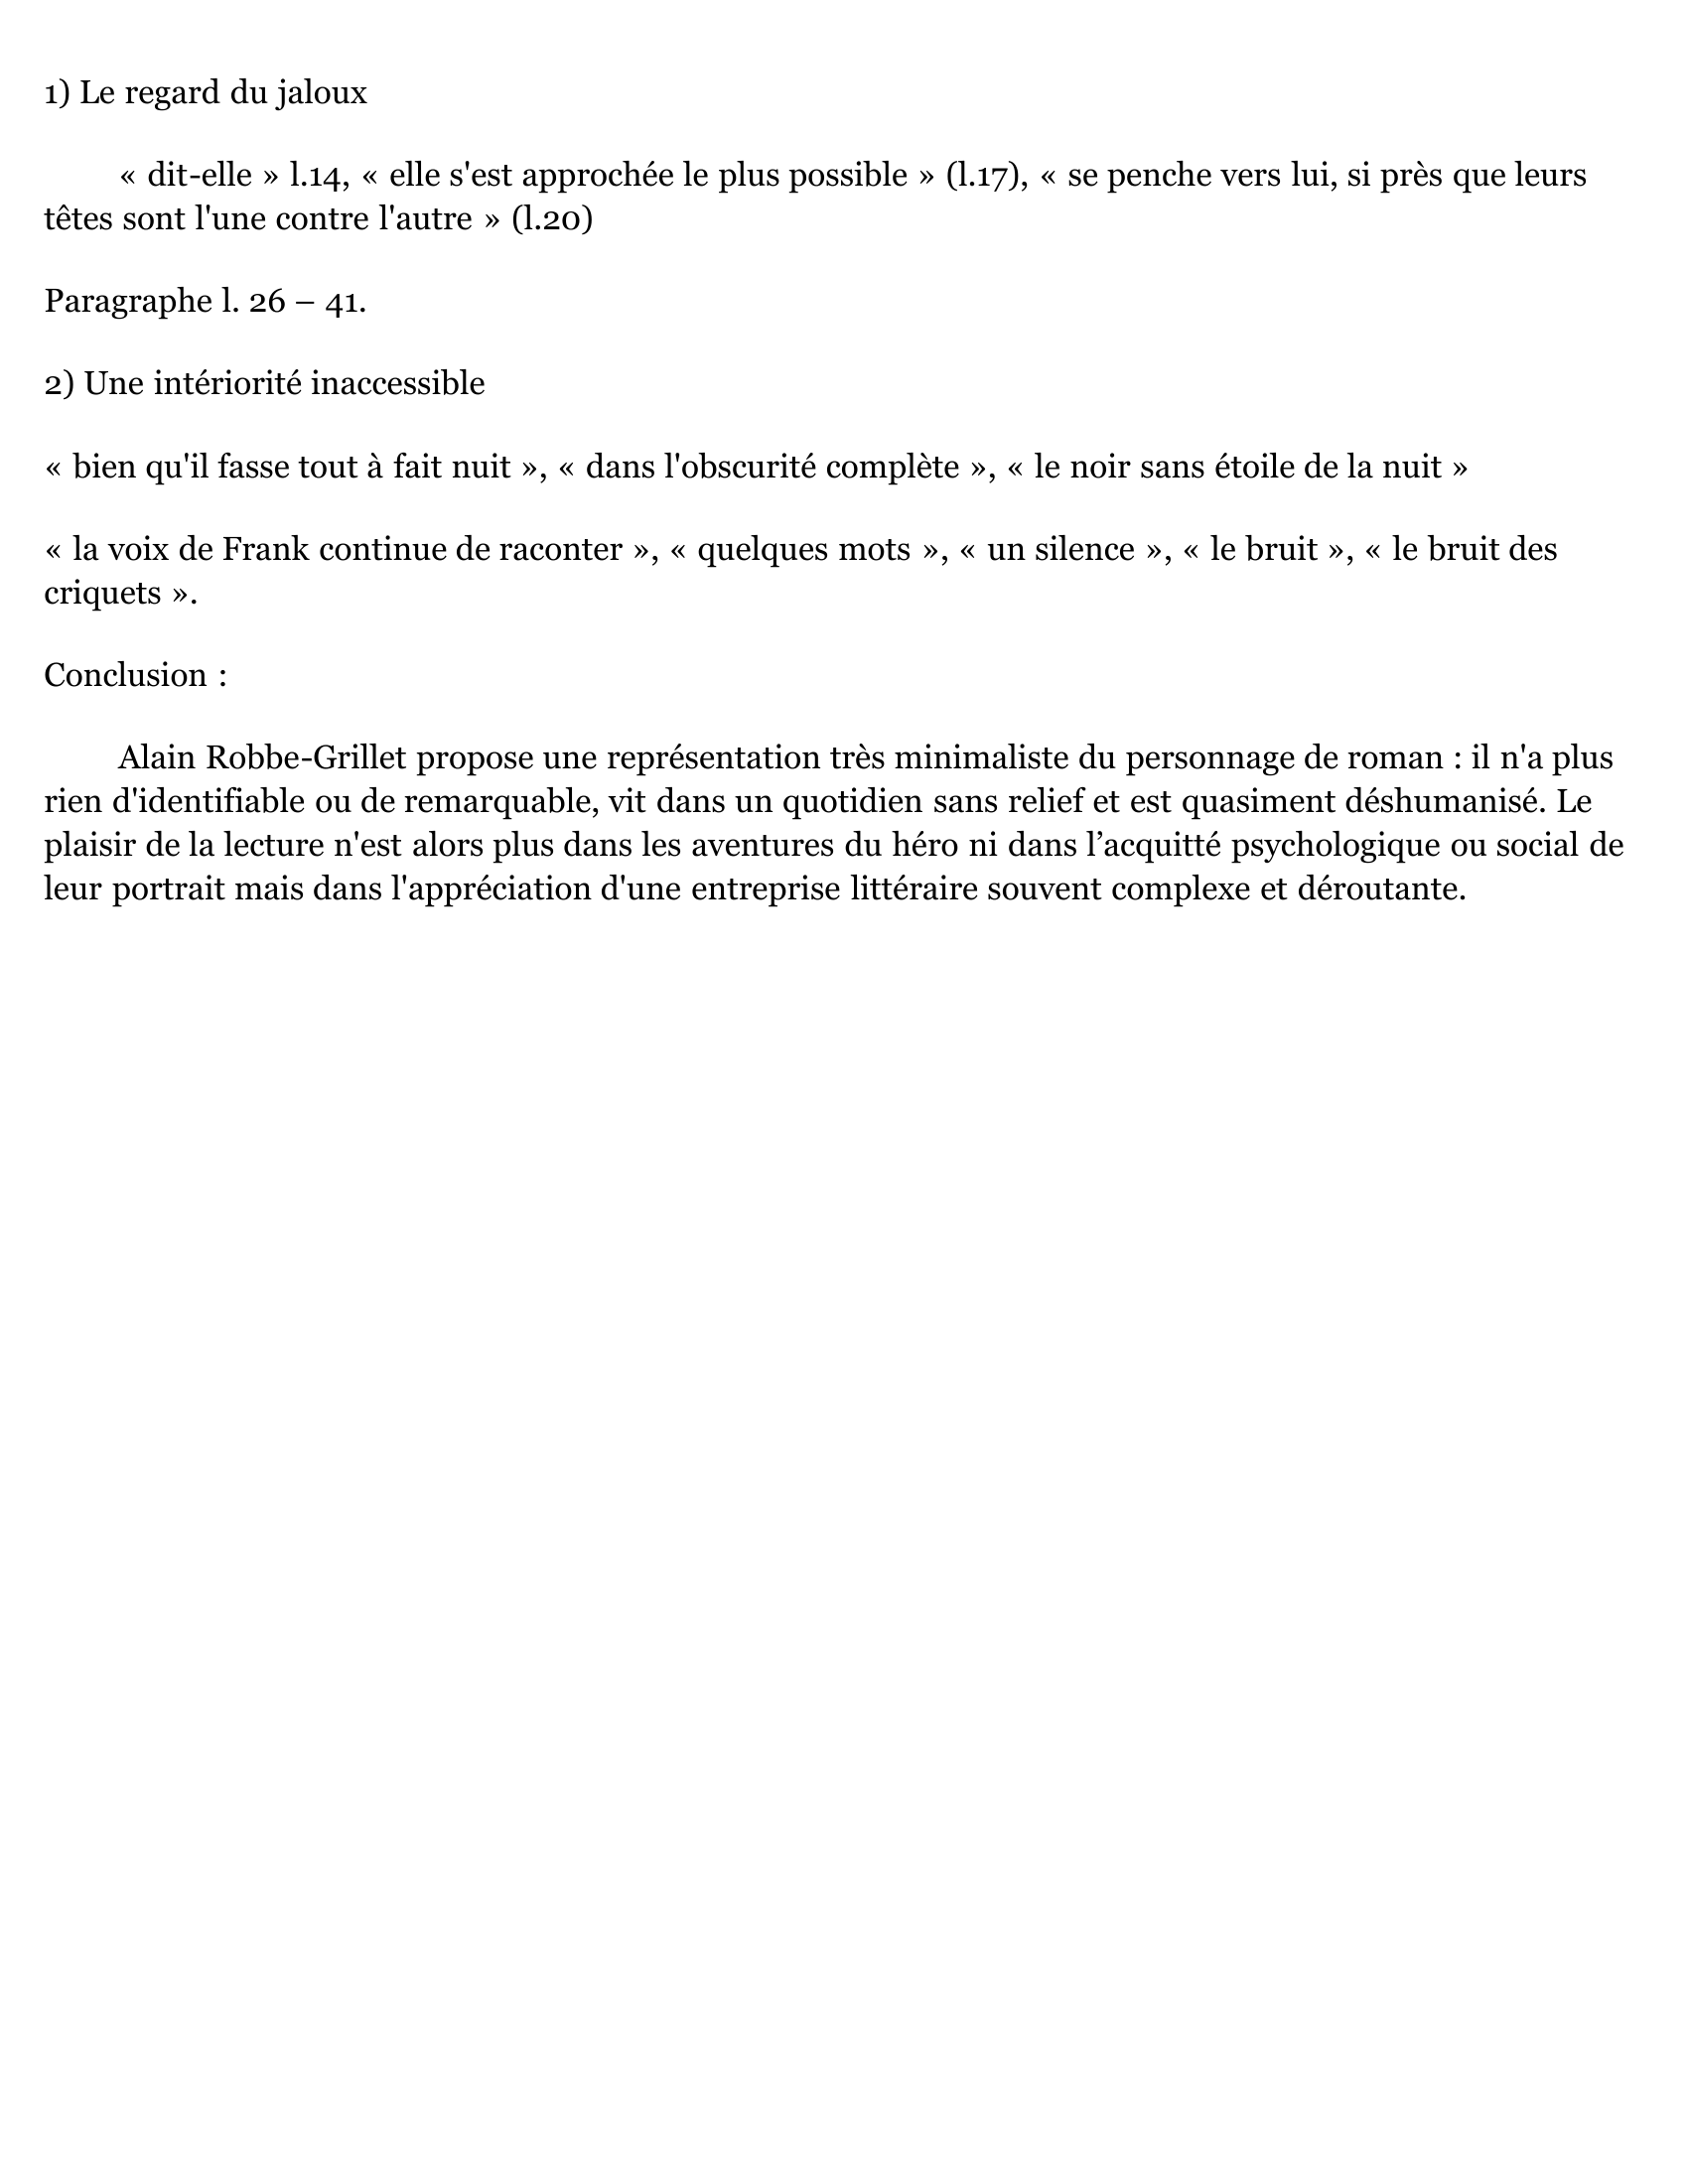 Prévisualisation du document " La Jalousie " Alain Robbe-Grillet (1957) Commentaire.